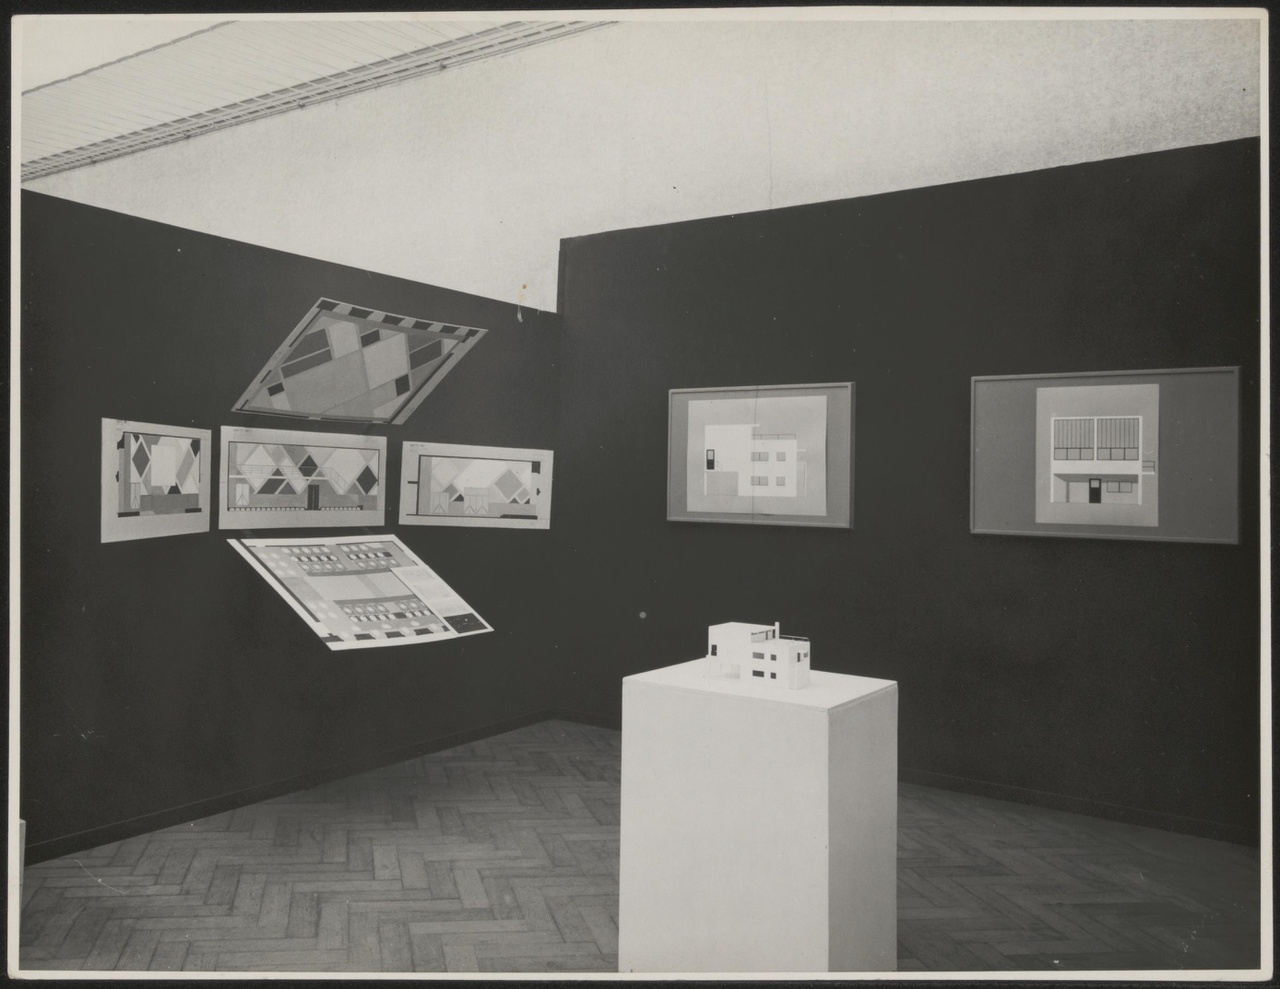 Afbeelding van tentoonstelling De Stijl SMA, 1951, zaal 4 met maquette Meudon